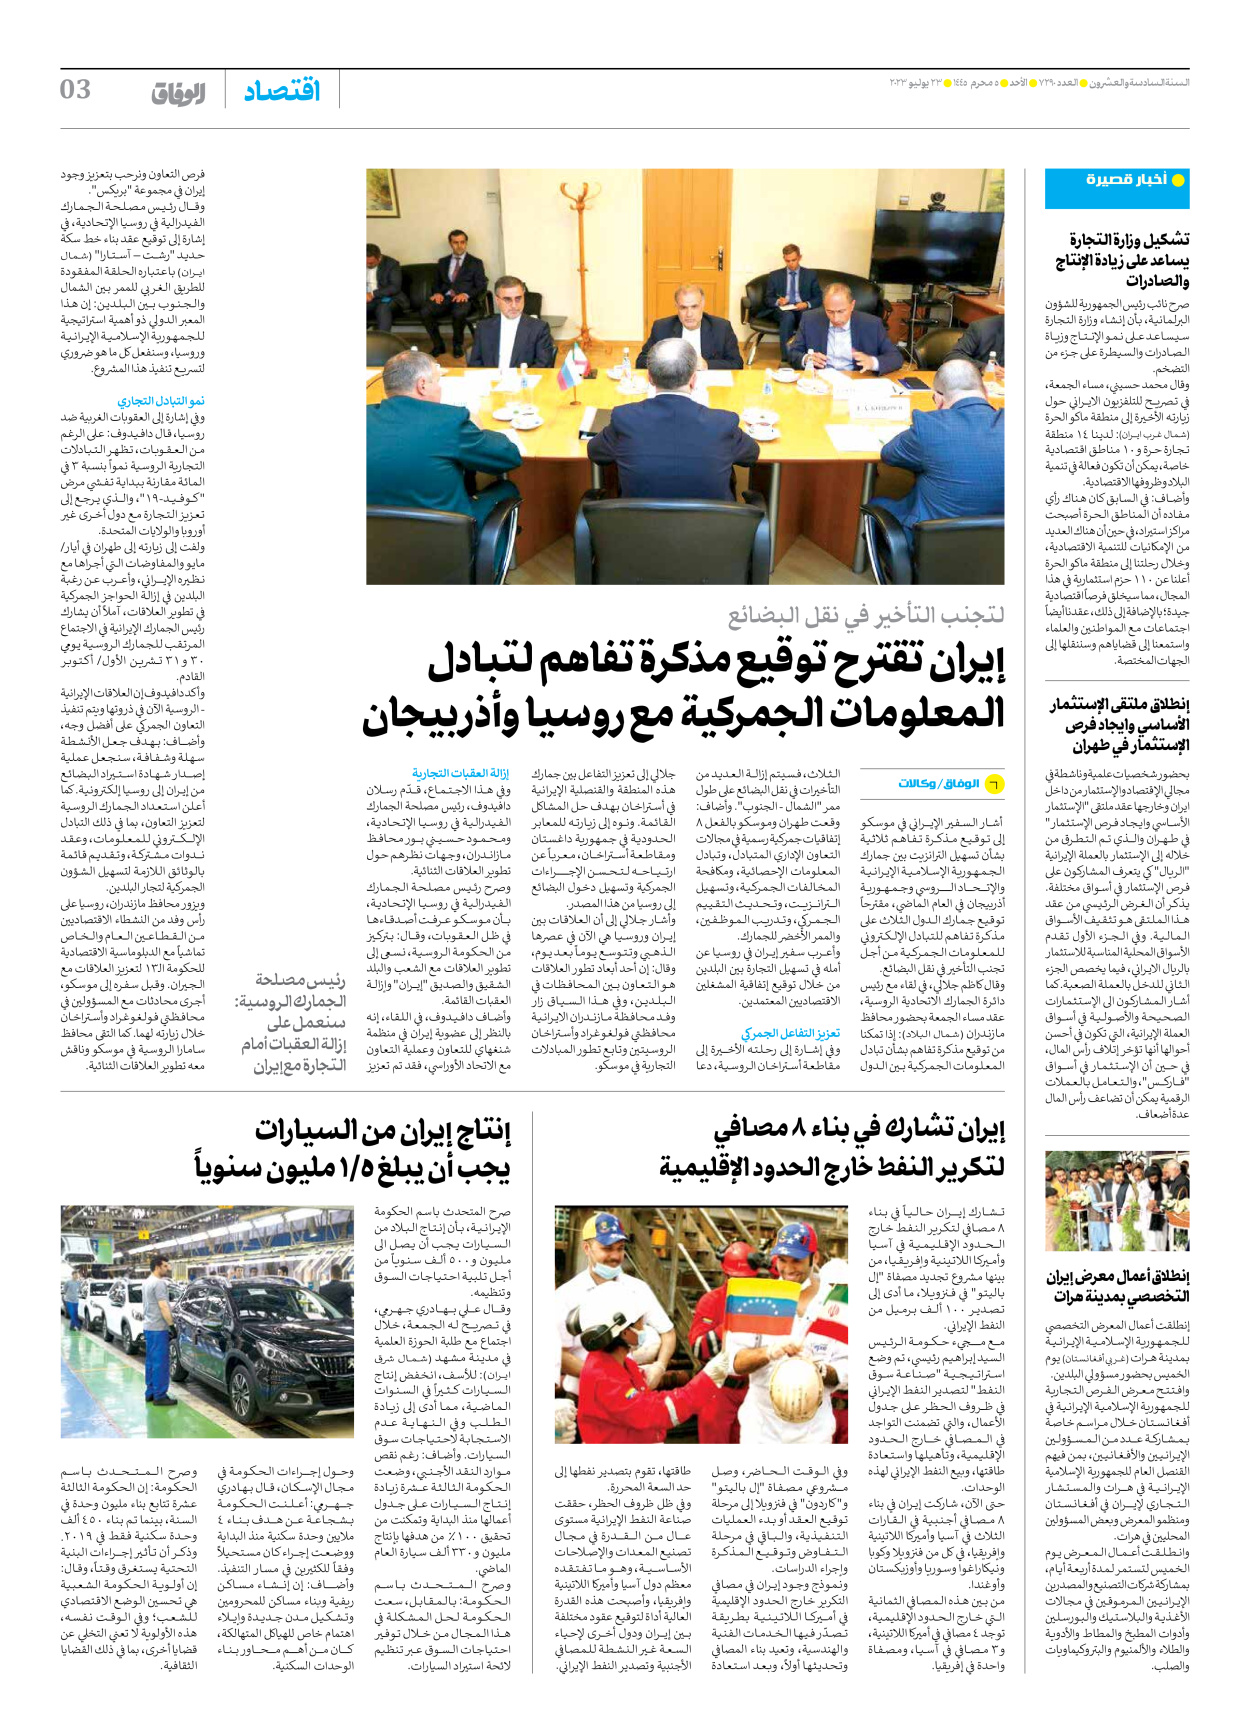 صحیفة ایران الدولیة الوفاق - العدد سبعة آلاف ومائتان وتسعون - ٢٣ يوليو ٢٠٢٣ - الصفحة ۳